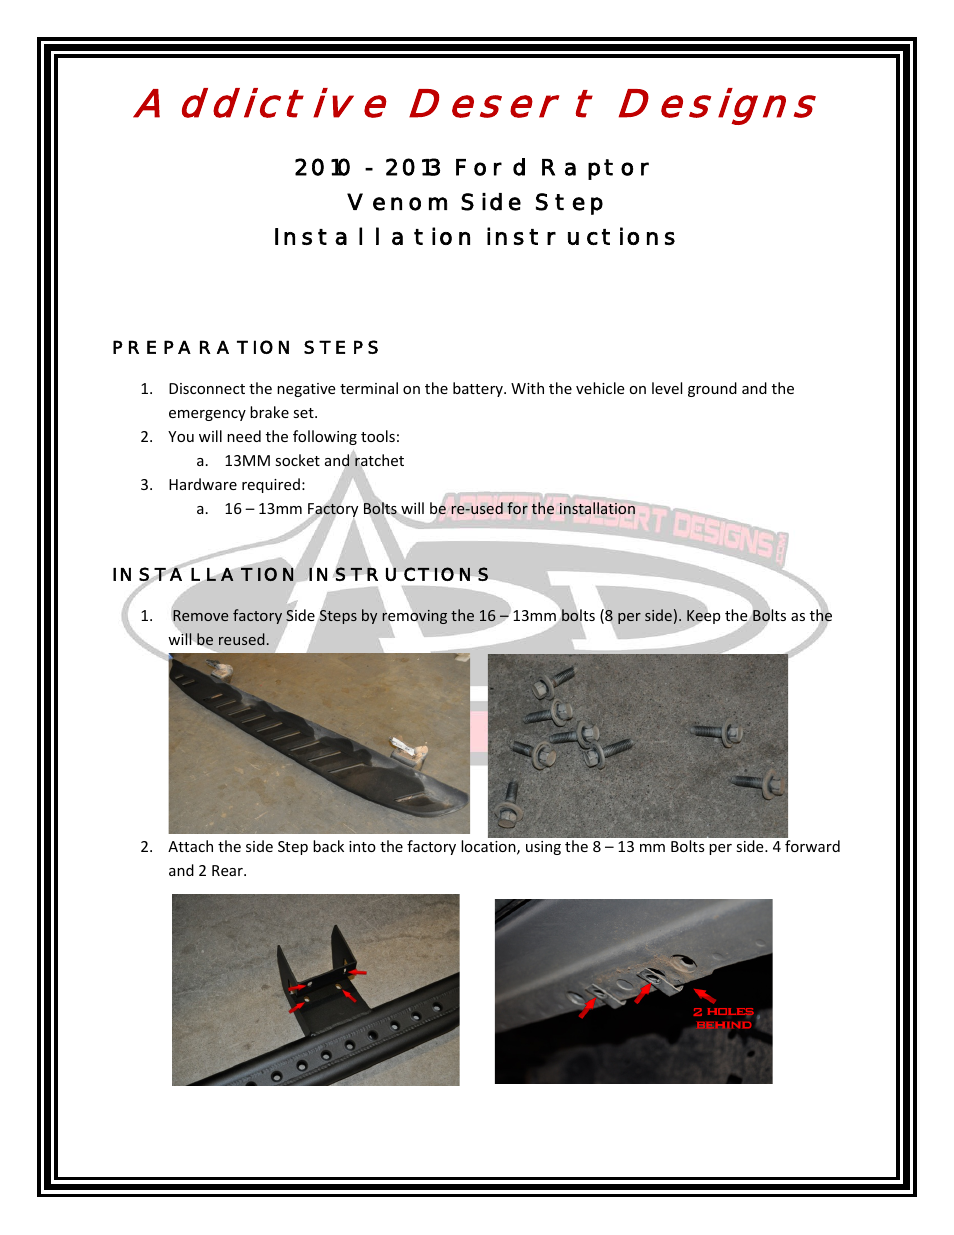 2009 - 2013 F-150/Raptor Venom Side Step